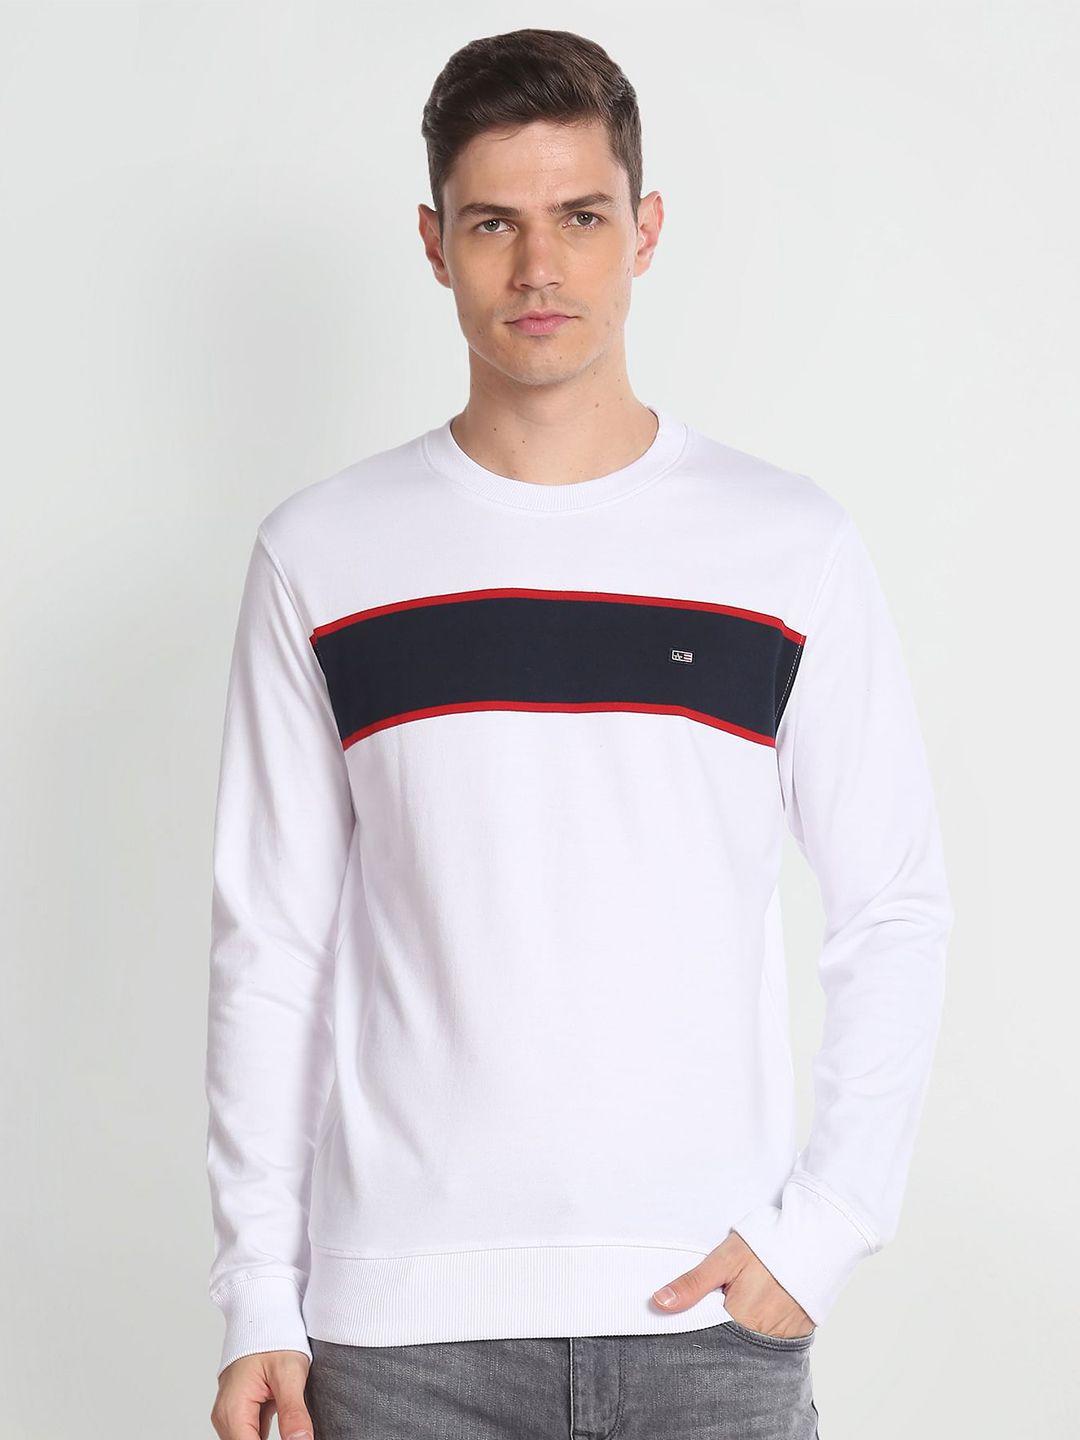 arrow-sport-round-neck-pure-cotton-sweatshirt